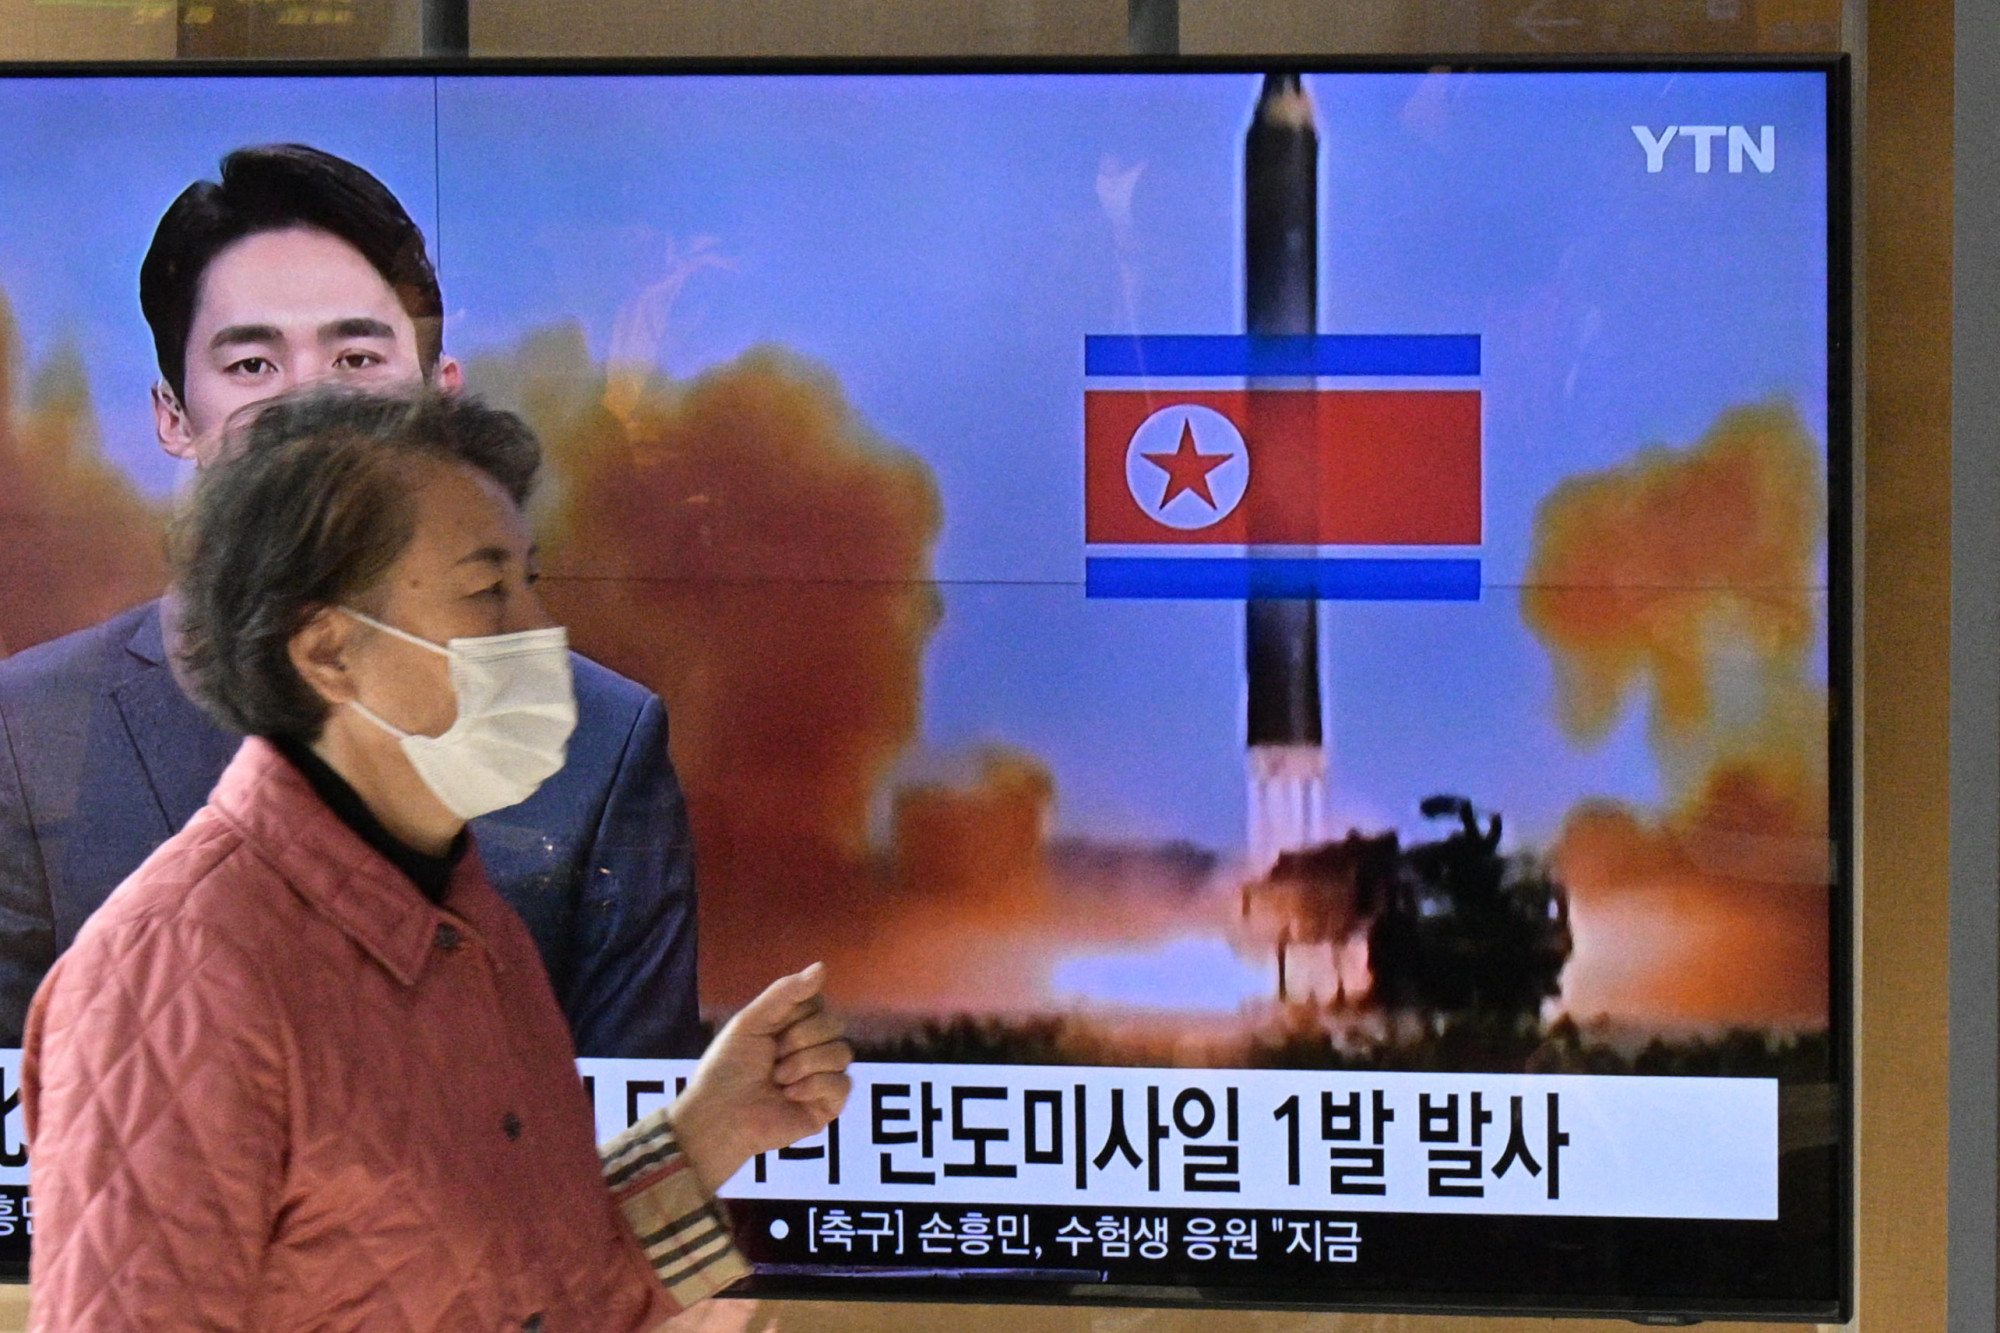 Észak-Korea ismét rakétát tesztelt